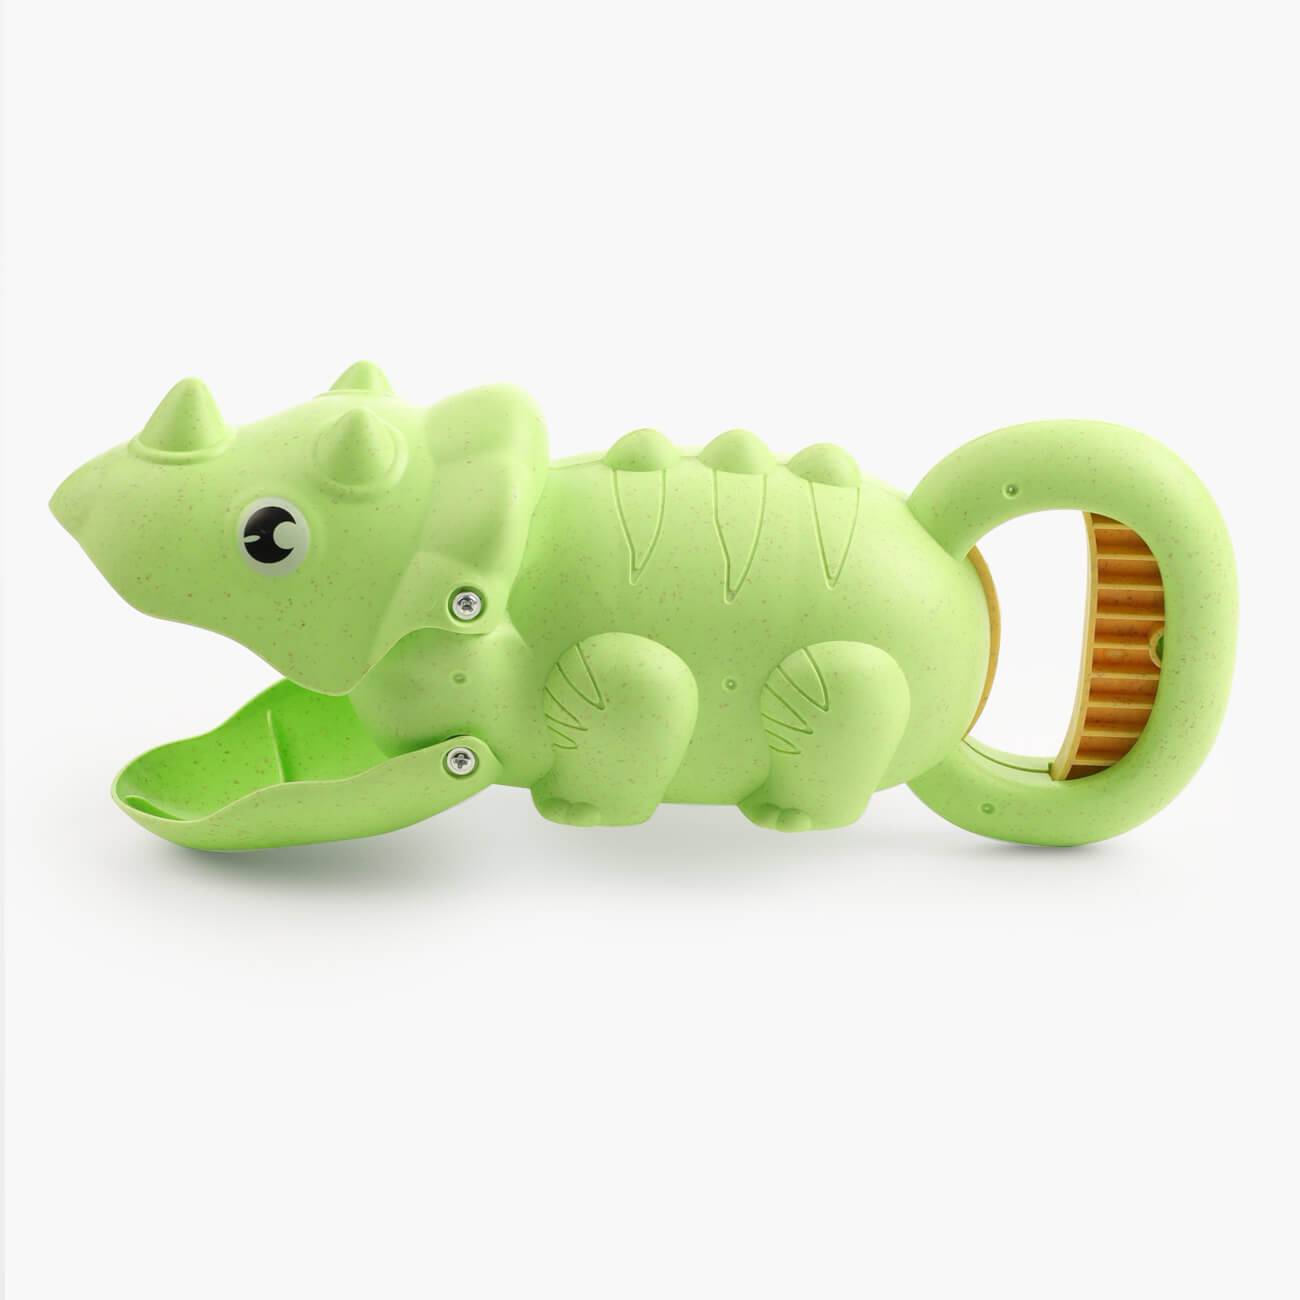 Игрушка для песка, 24 см, пластик, зеленая, Трицератопс, Dino интерактивная игрушка динозавр трицератопс